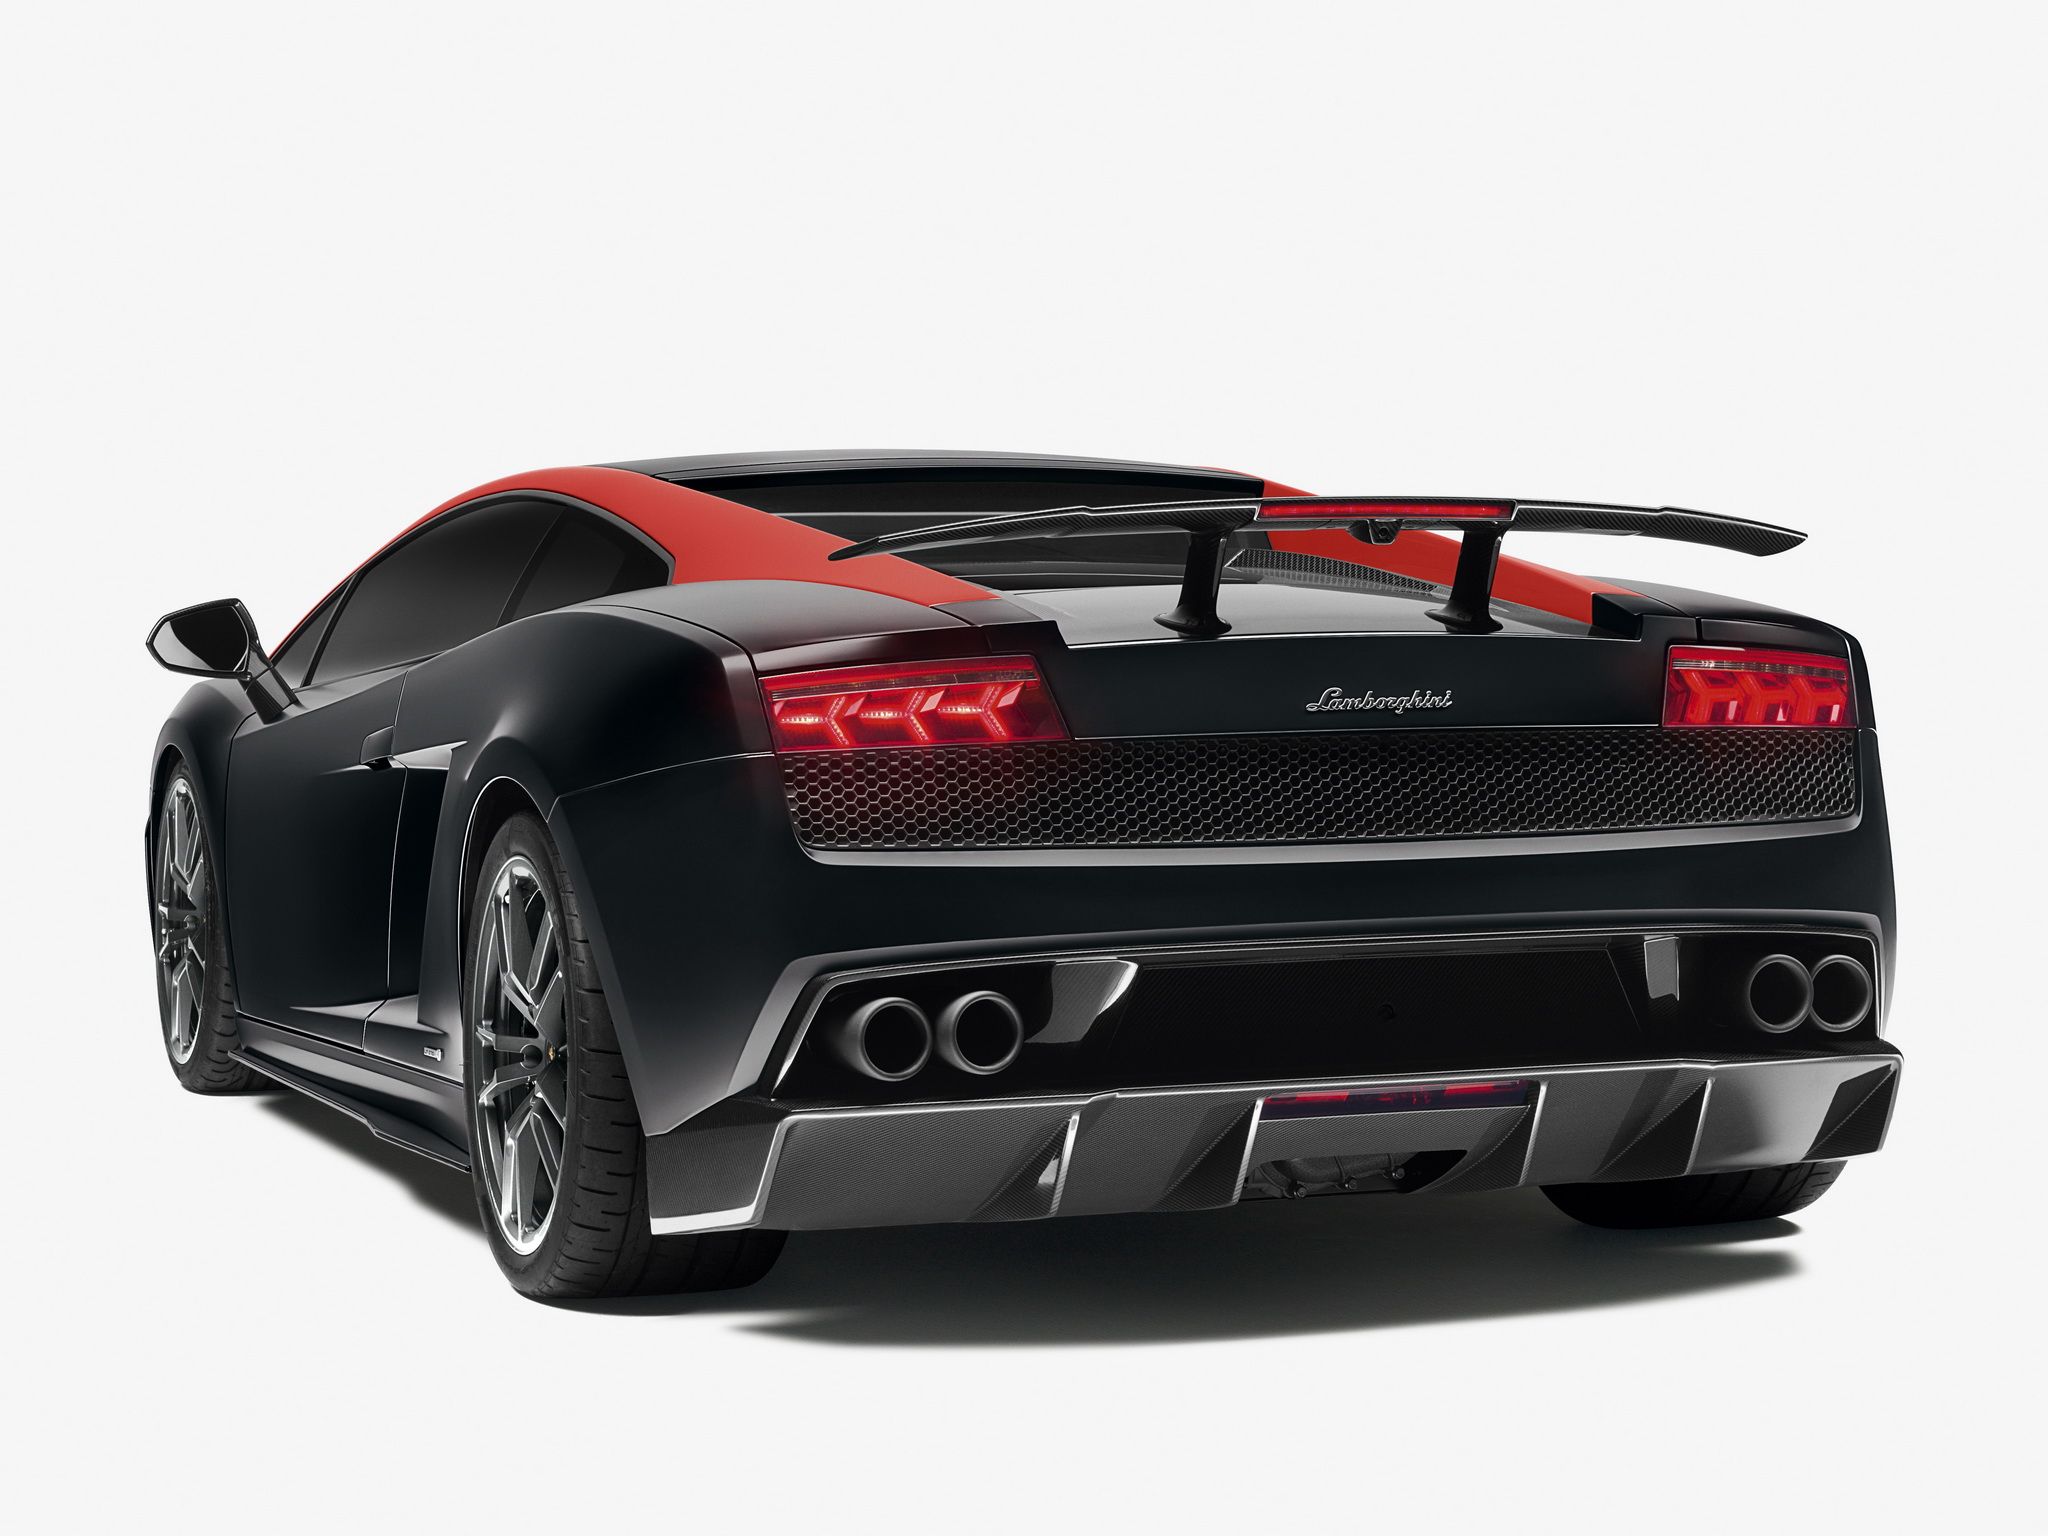 2012, Lamborghini, Gallardo, Lp570 4, Superleggera, Edizione, Tecnica, Supercar, Supercars Wallpaper